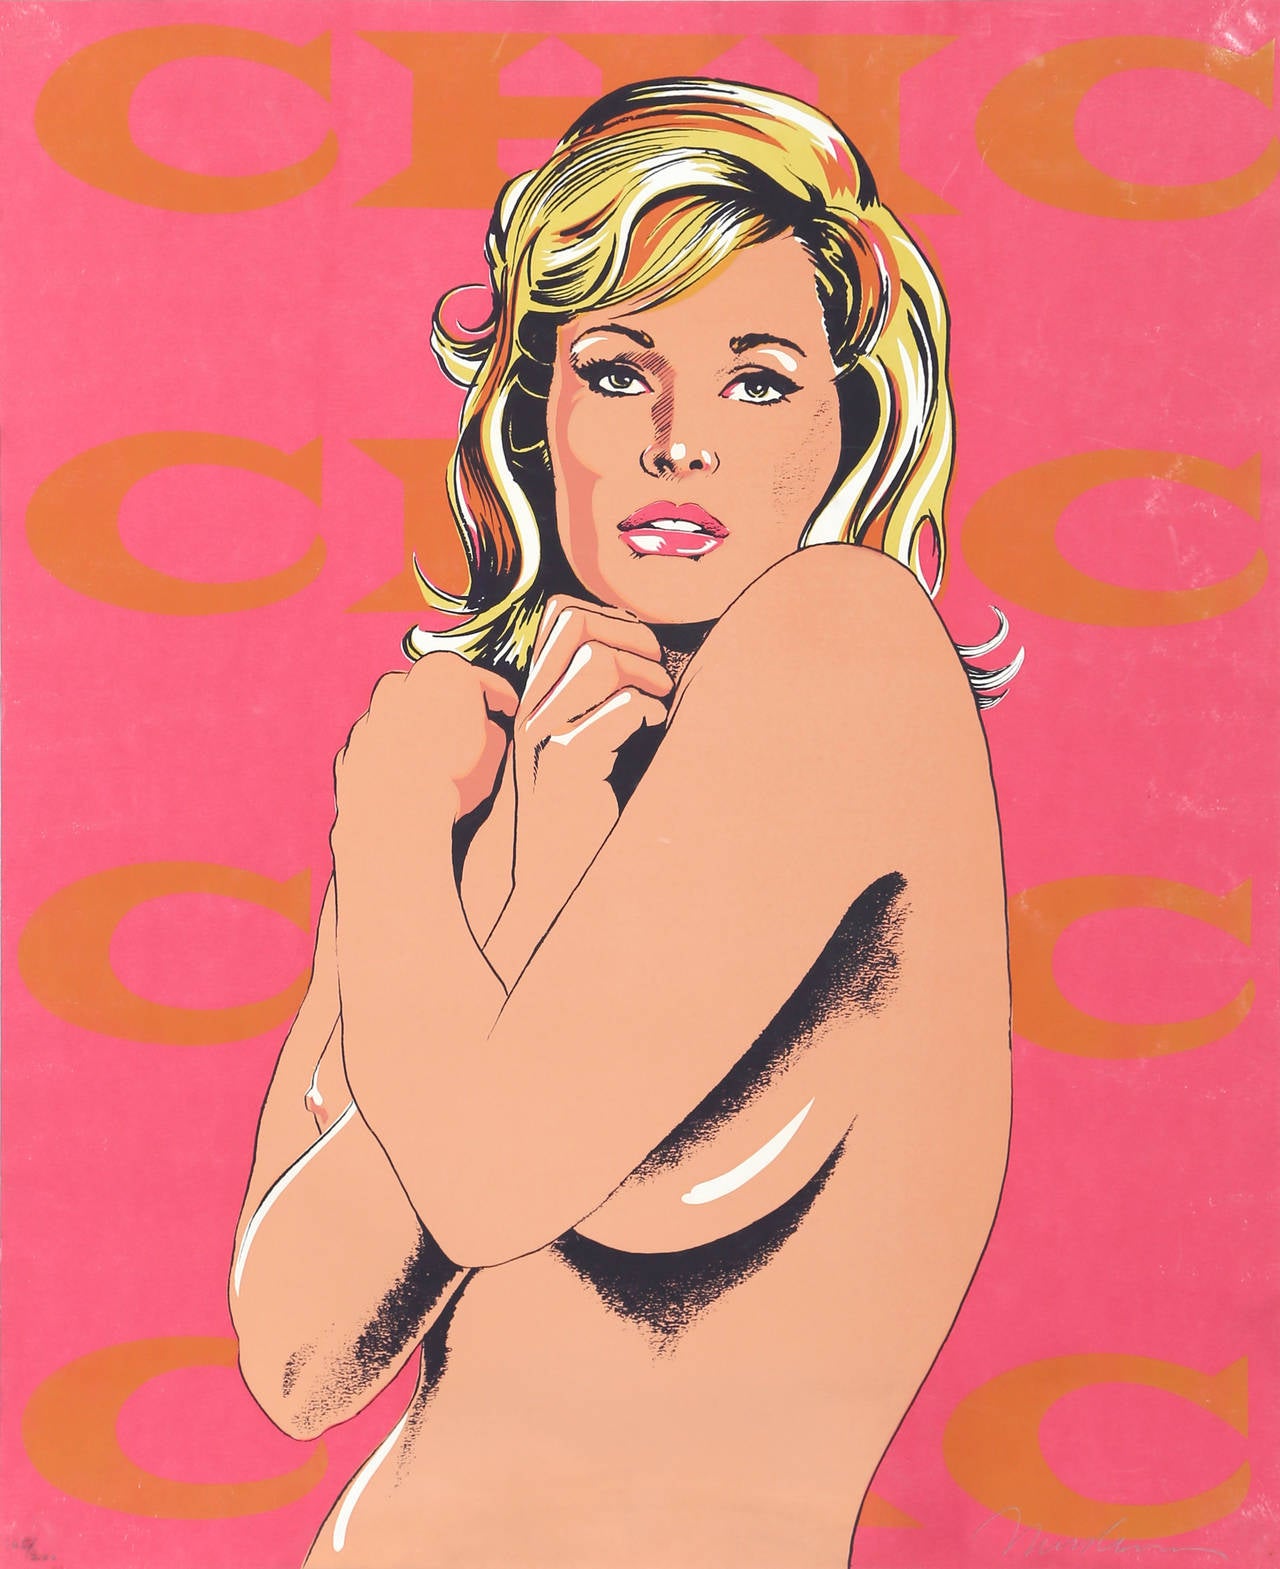 Artiste : Mel Ramos, américain (1935 - )
Titre : Chic de 11 artistes pop
Année : 1965
Médium : Sérigraphie, signée et numérotée au crayon
Edition : 200, XXII/L
Taille : 60,96 x 49,53 cm (24 x 19,5 in)

Knickerbocker Machine and Foundry, Inc, New